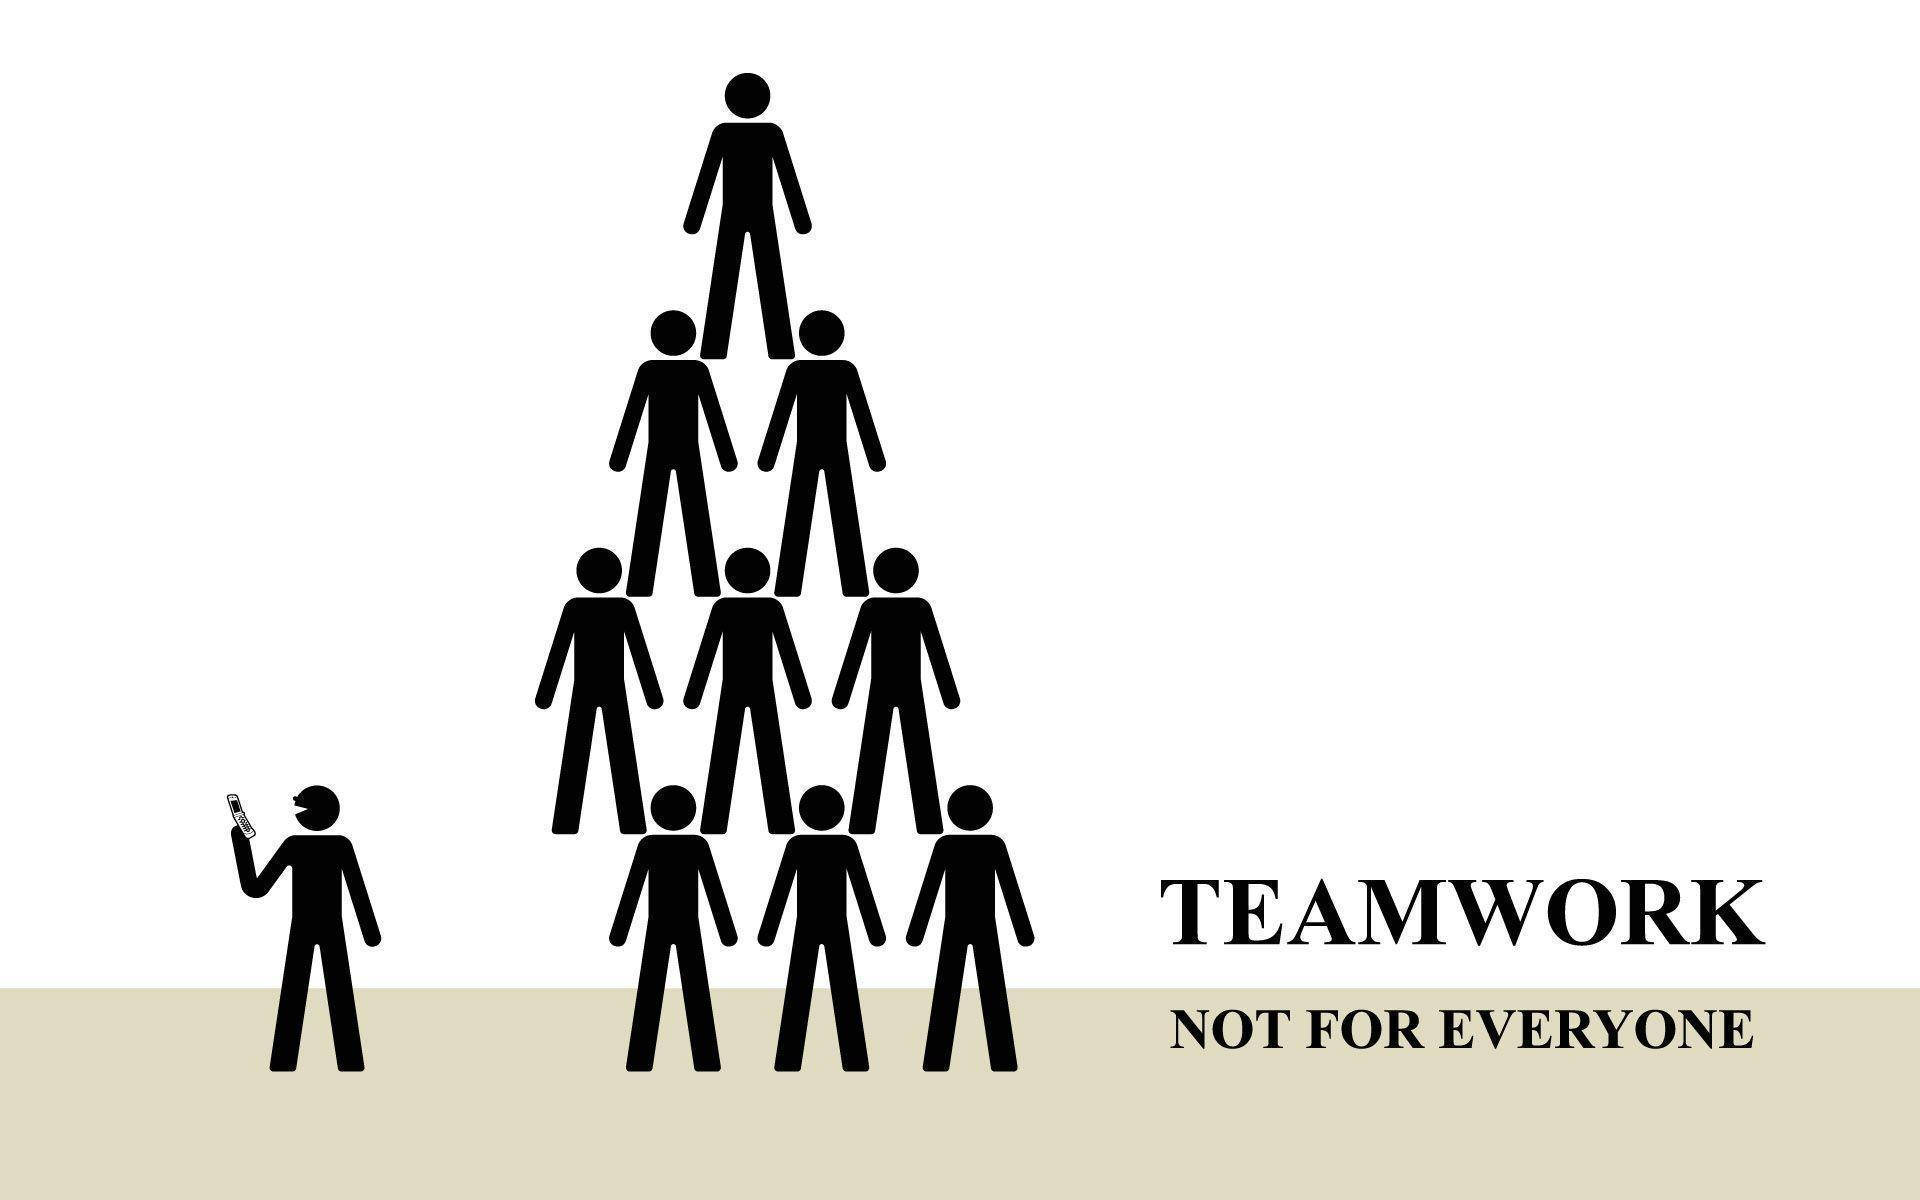 Triumph In Teamwork: A Successful Human Pyramid